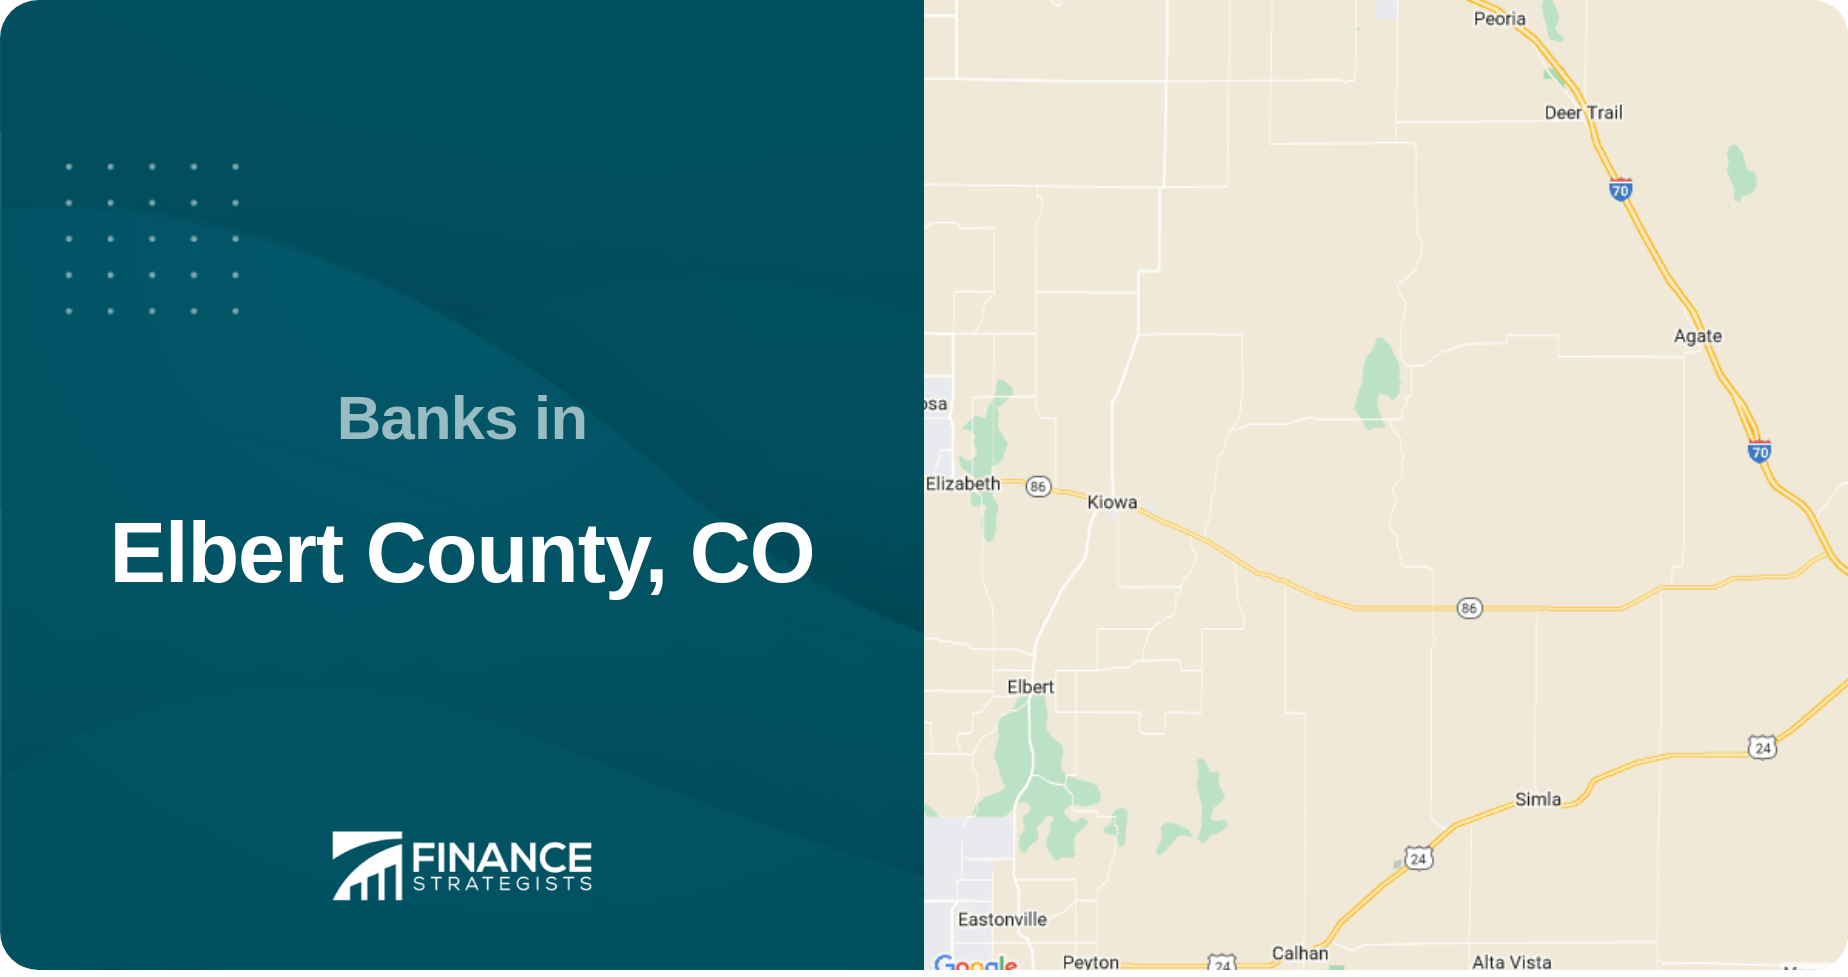 Banks in Elbert County, CO